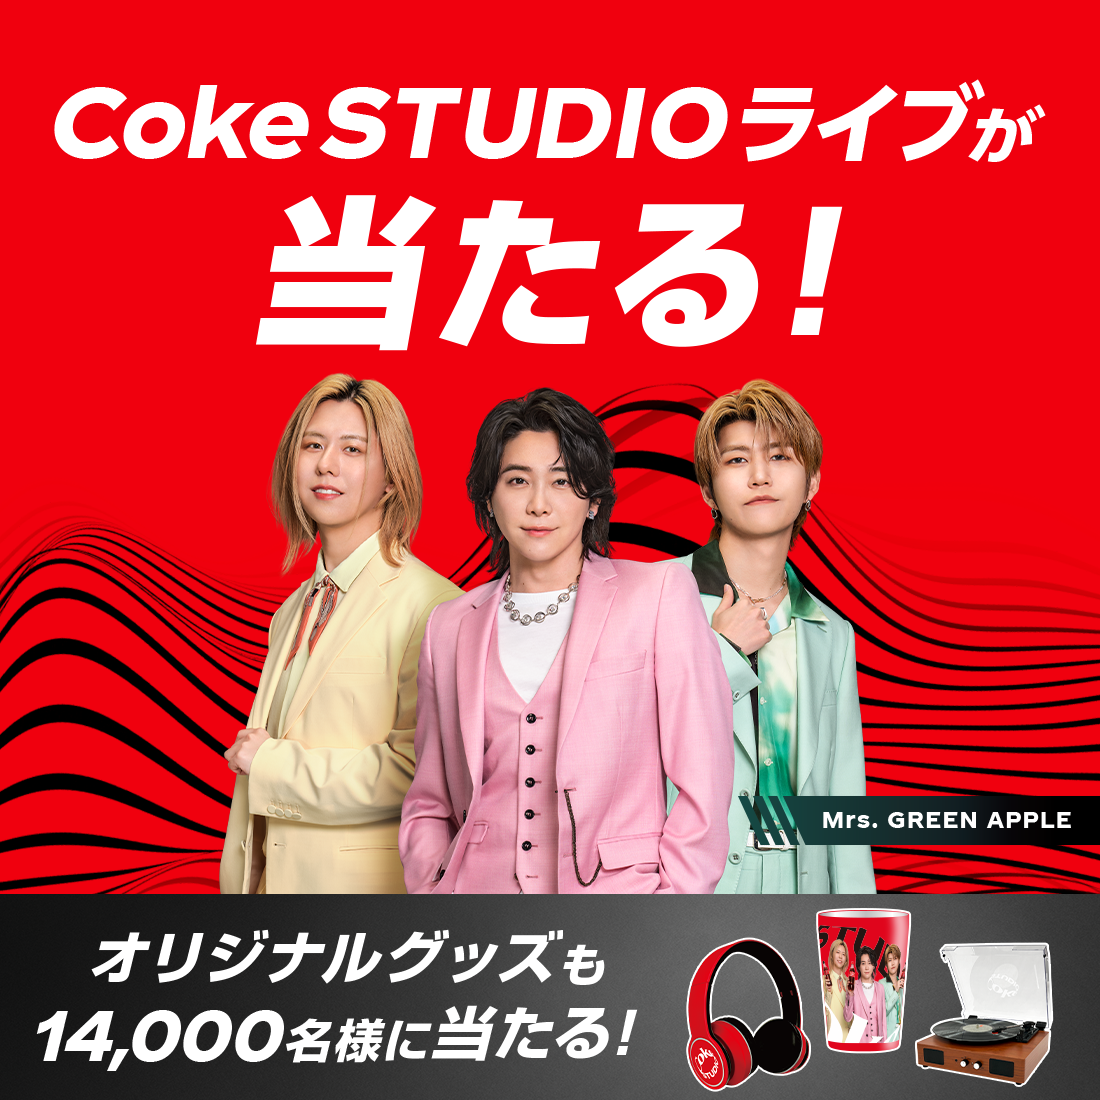 対象のコカ·コーラを買うとCoke STUDIOライブが当たる！その場で当たるオリジナルグッズも！Coke ONアプリから応募しよう。